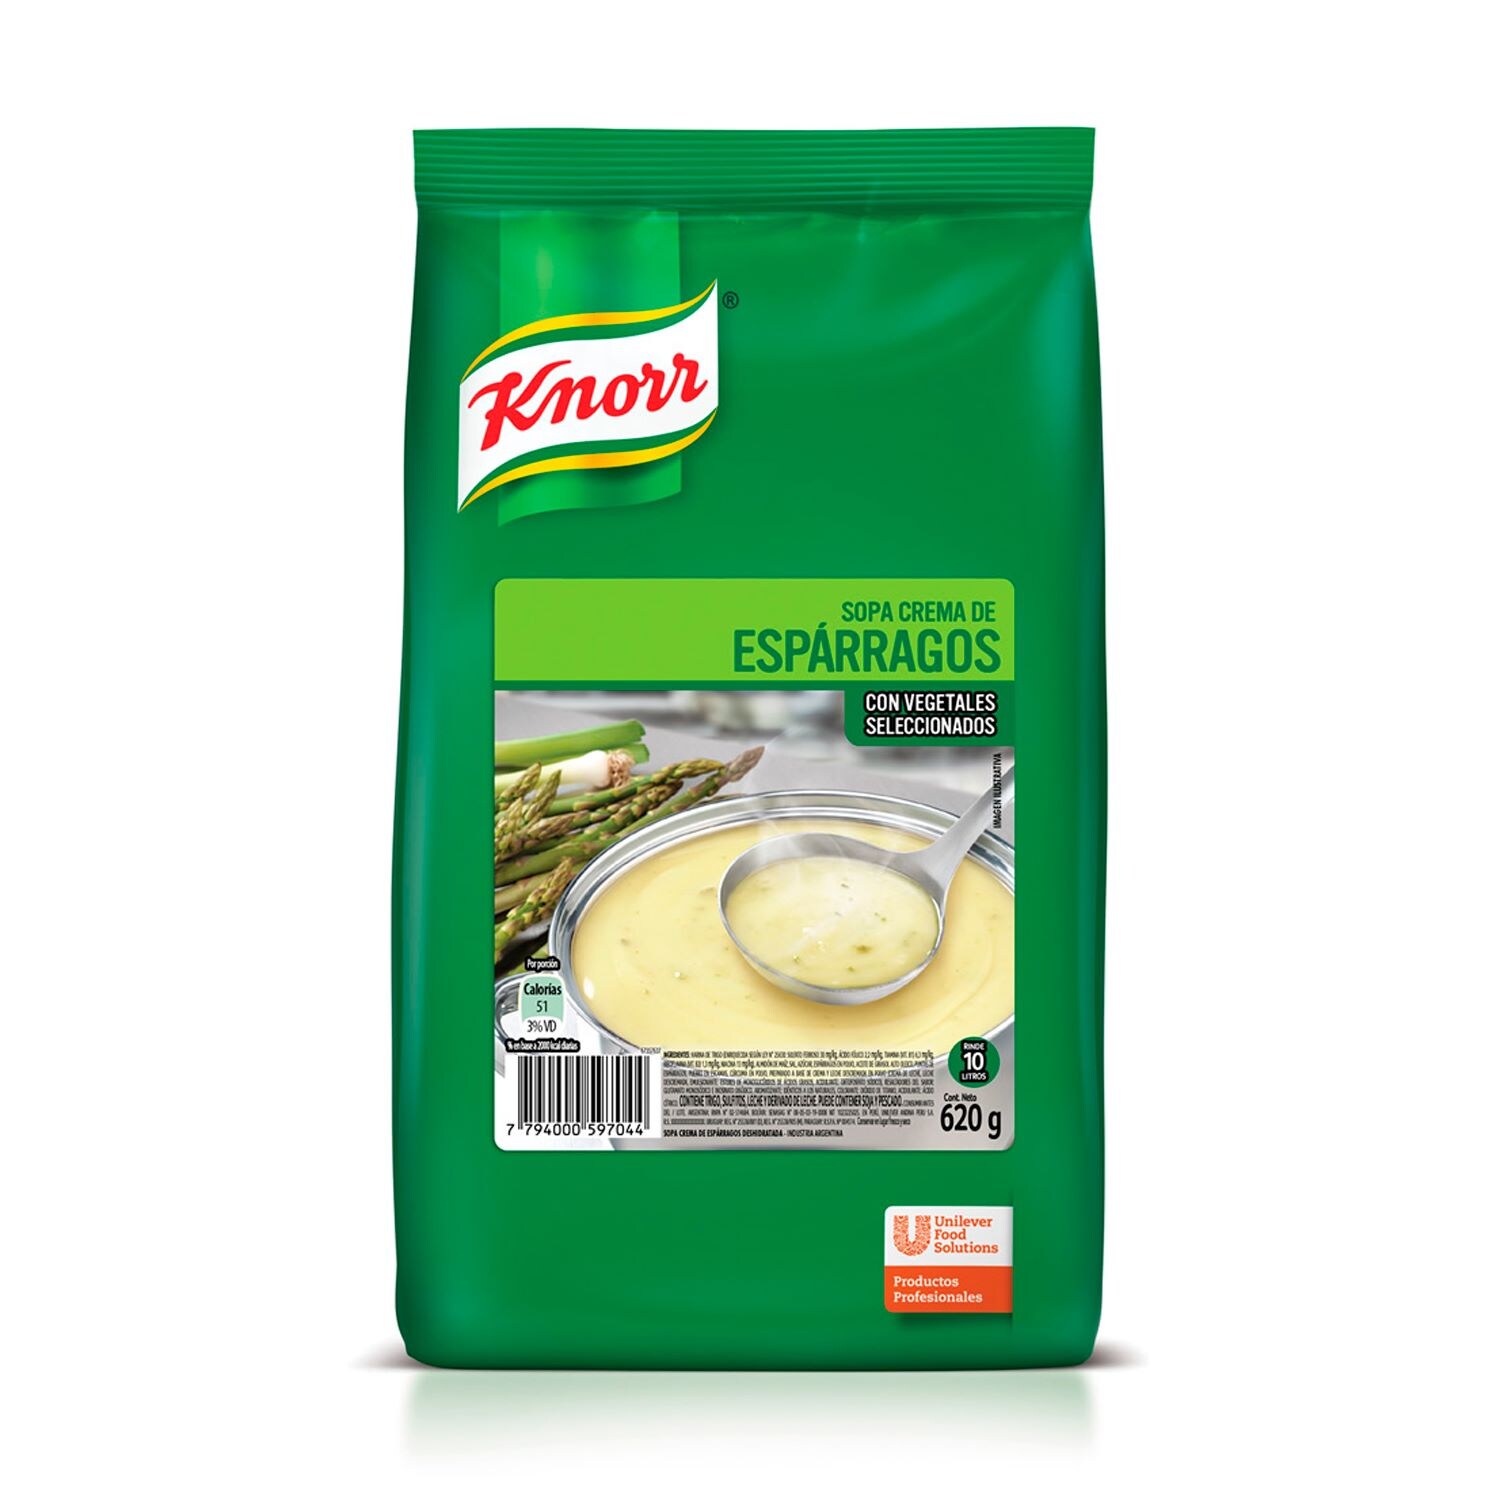 Sopa Crema Sabor Esparragos Knorr 6x620G (Exclusivo de Argentina, Uruguay) - 